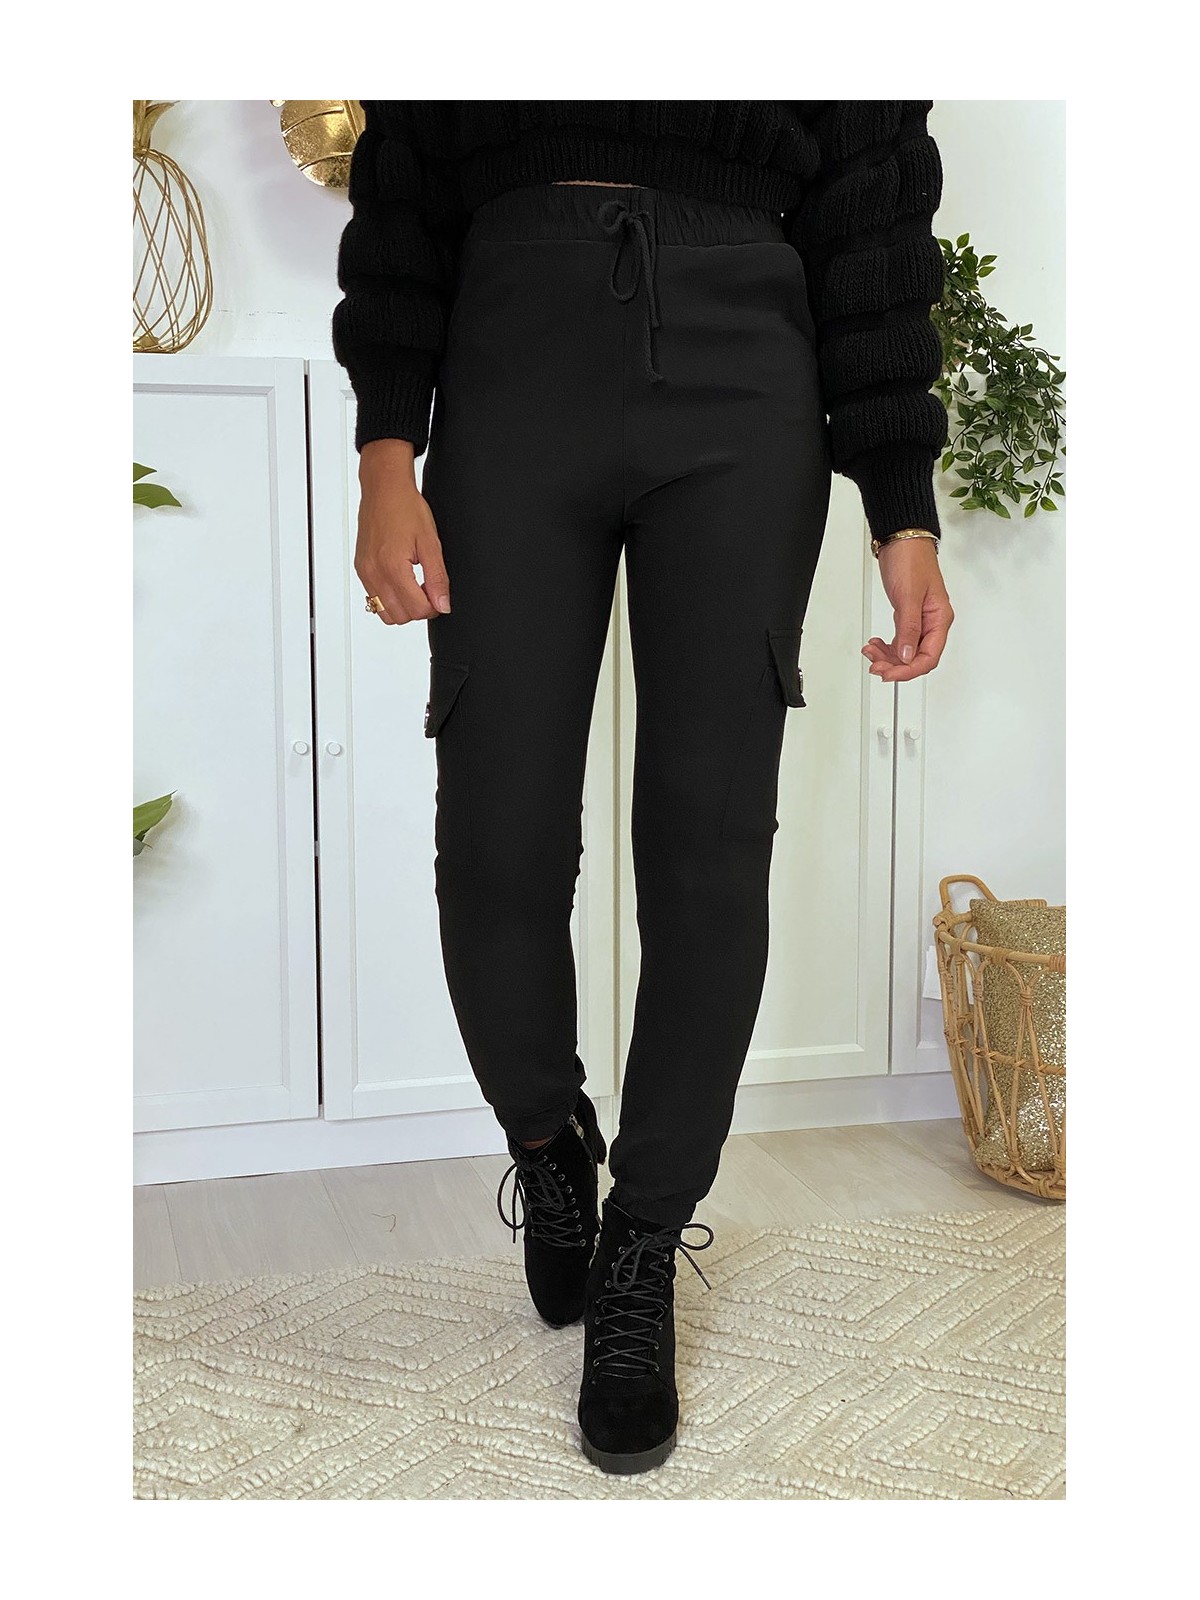 Pantalon jogging noir avec poches sur les côtés